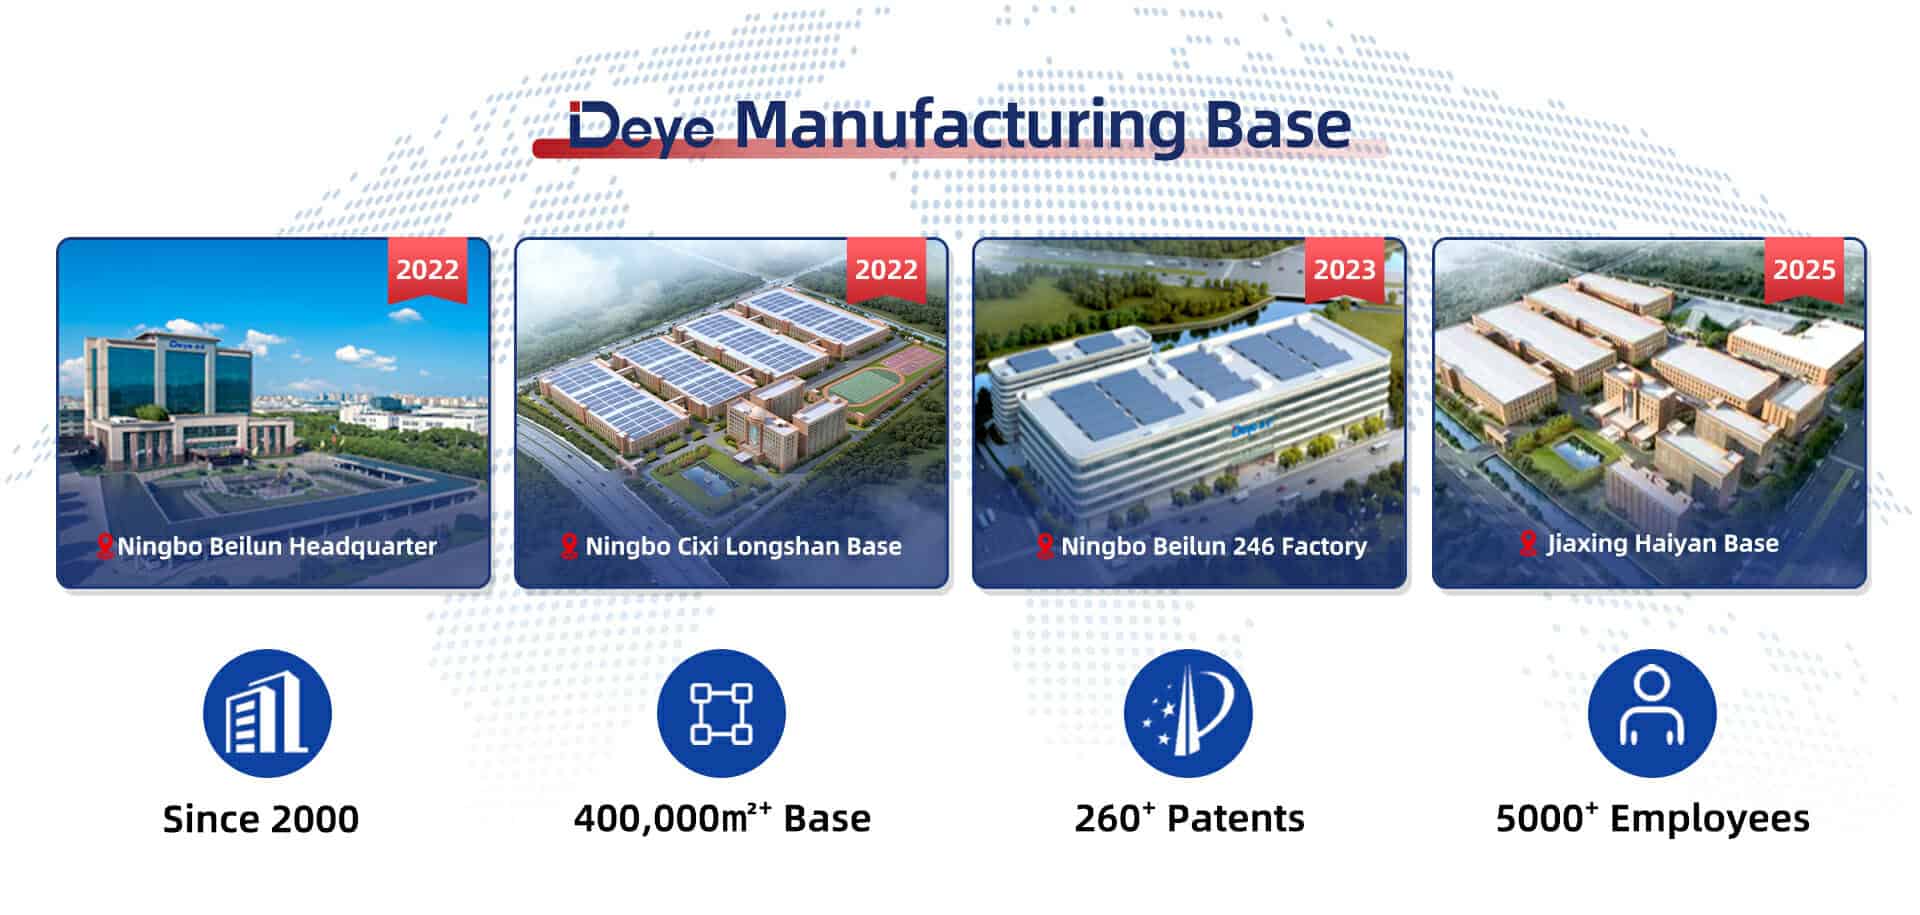 Deye Manufacturing Base